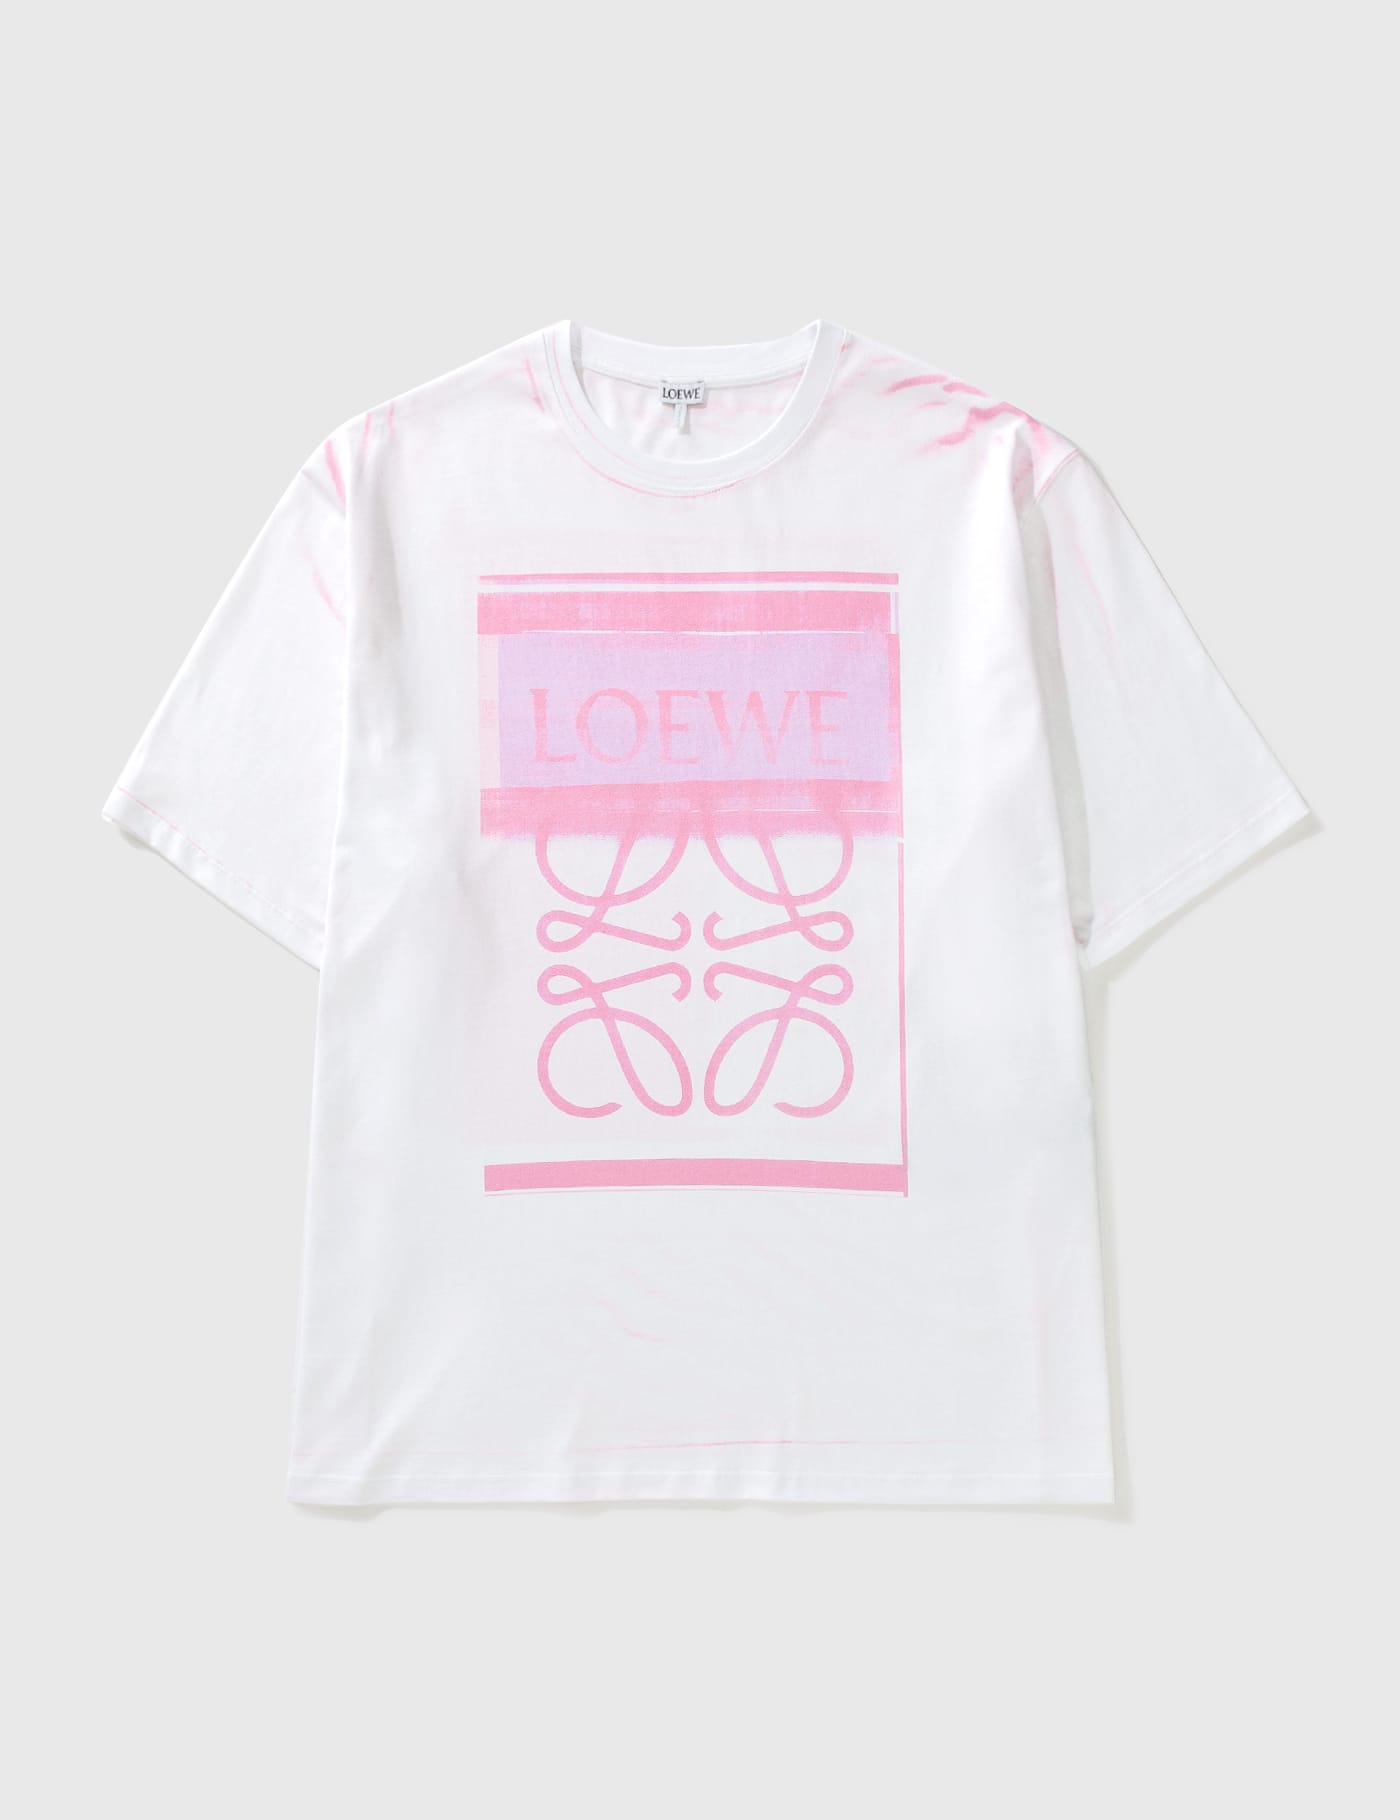 Loewe 포토그래피 아나그램 티셔츠